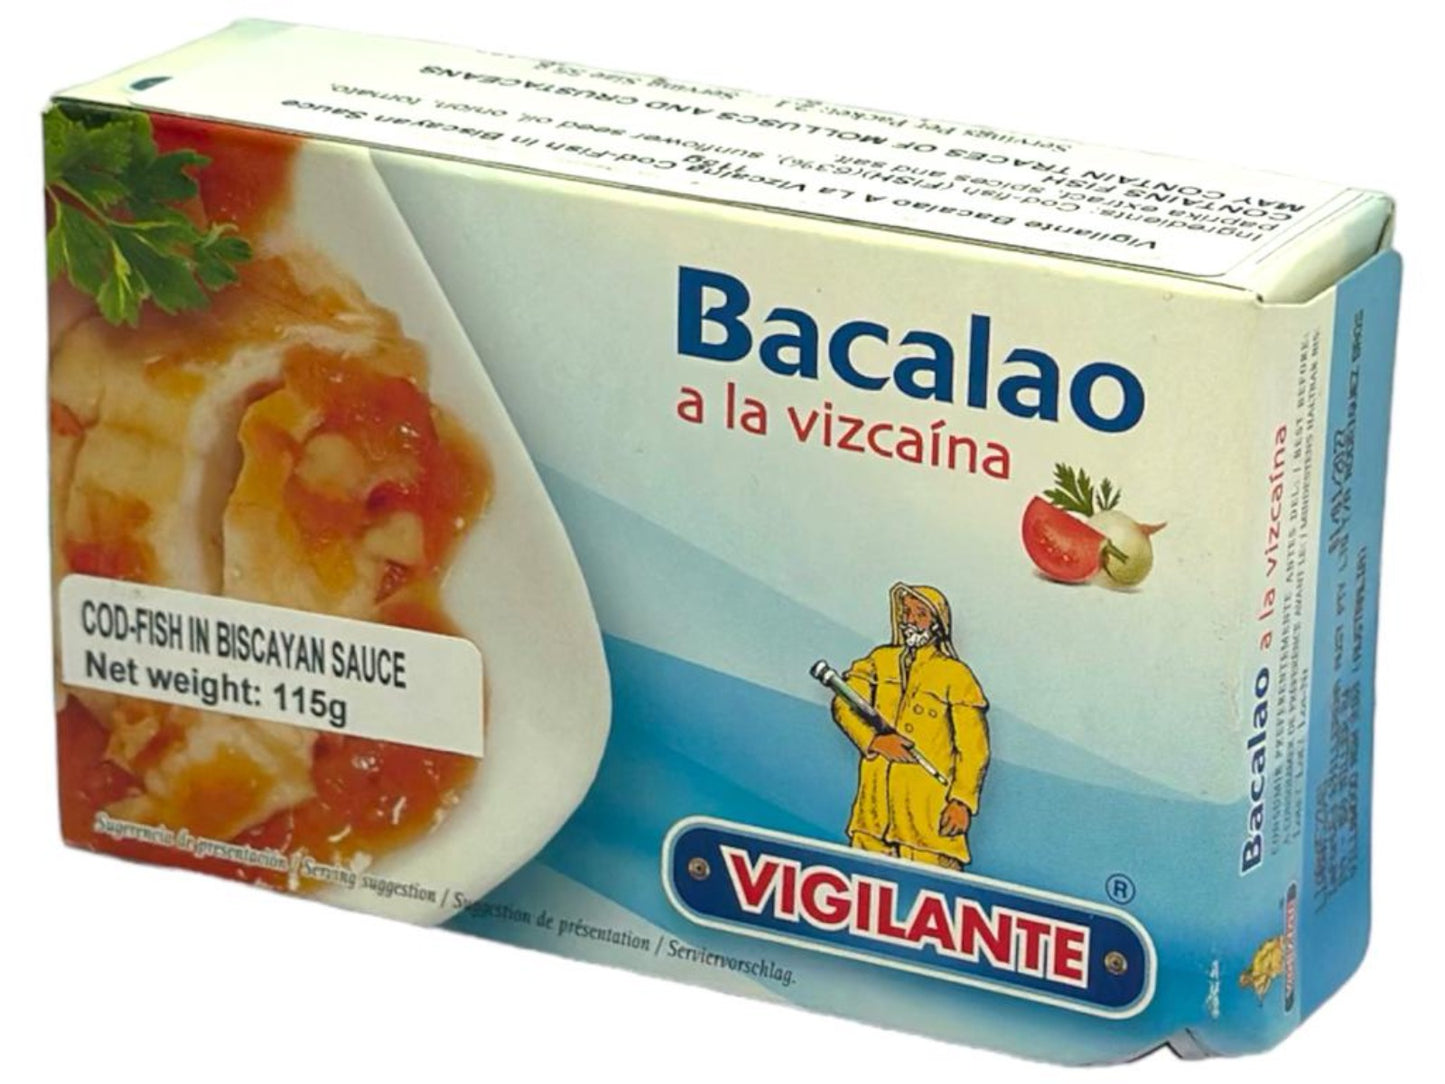 Vigilante Bacalao a la Vizcaina - Cod-Fish in Biscayan Sauce 115g